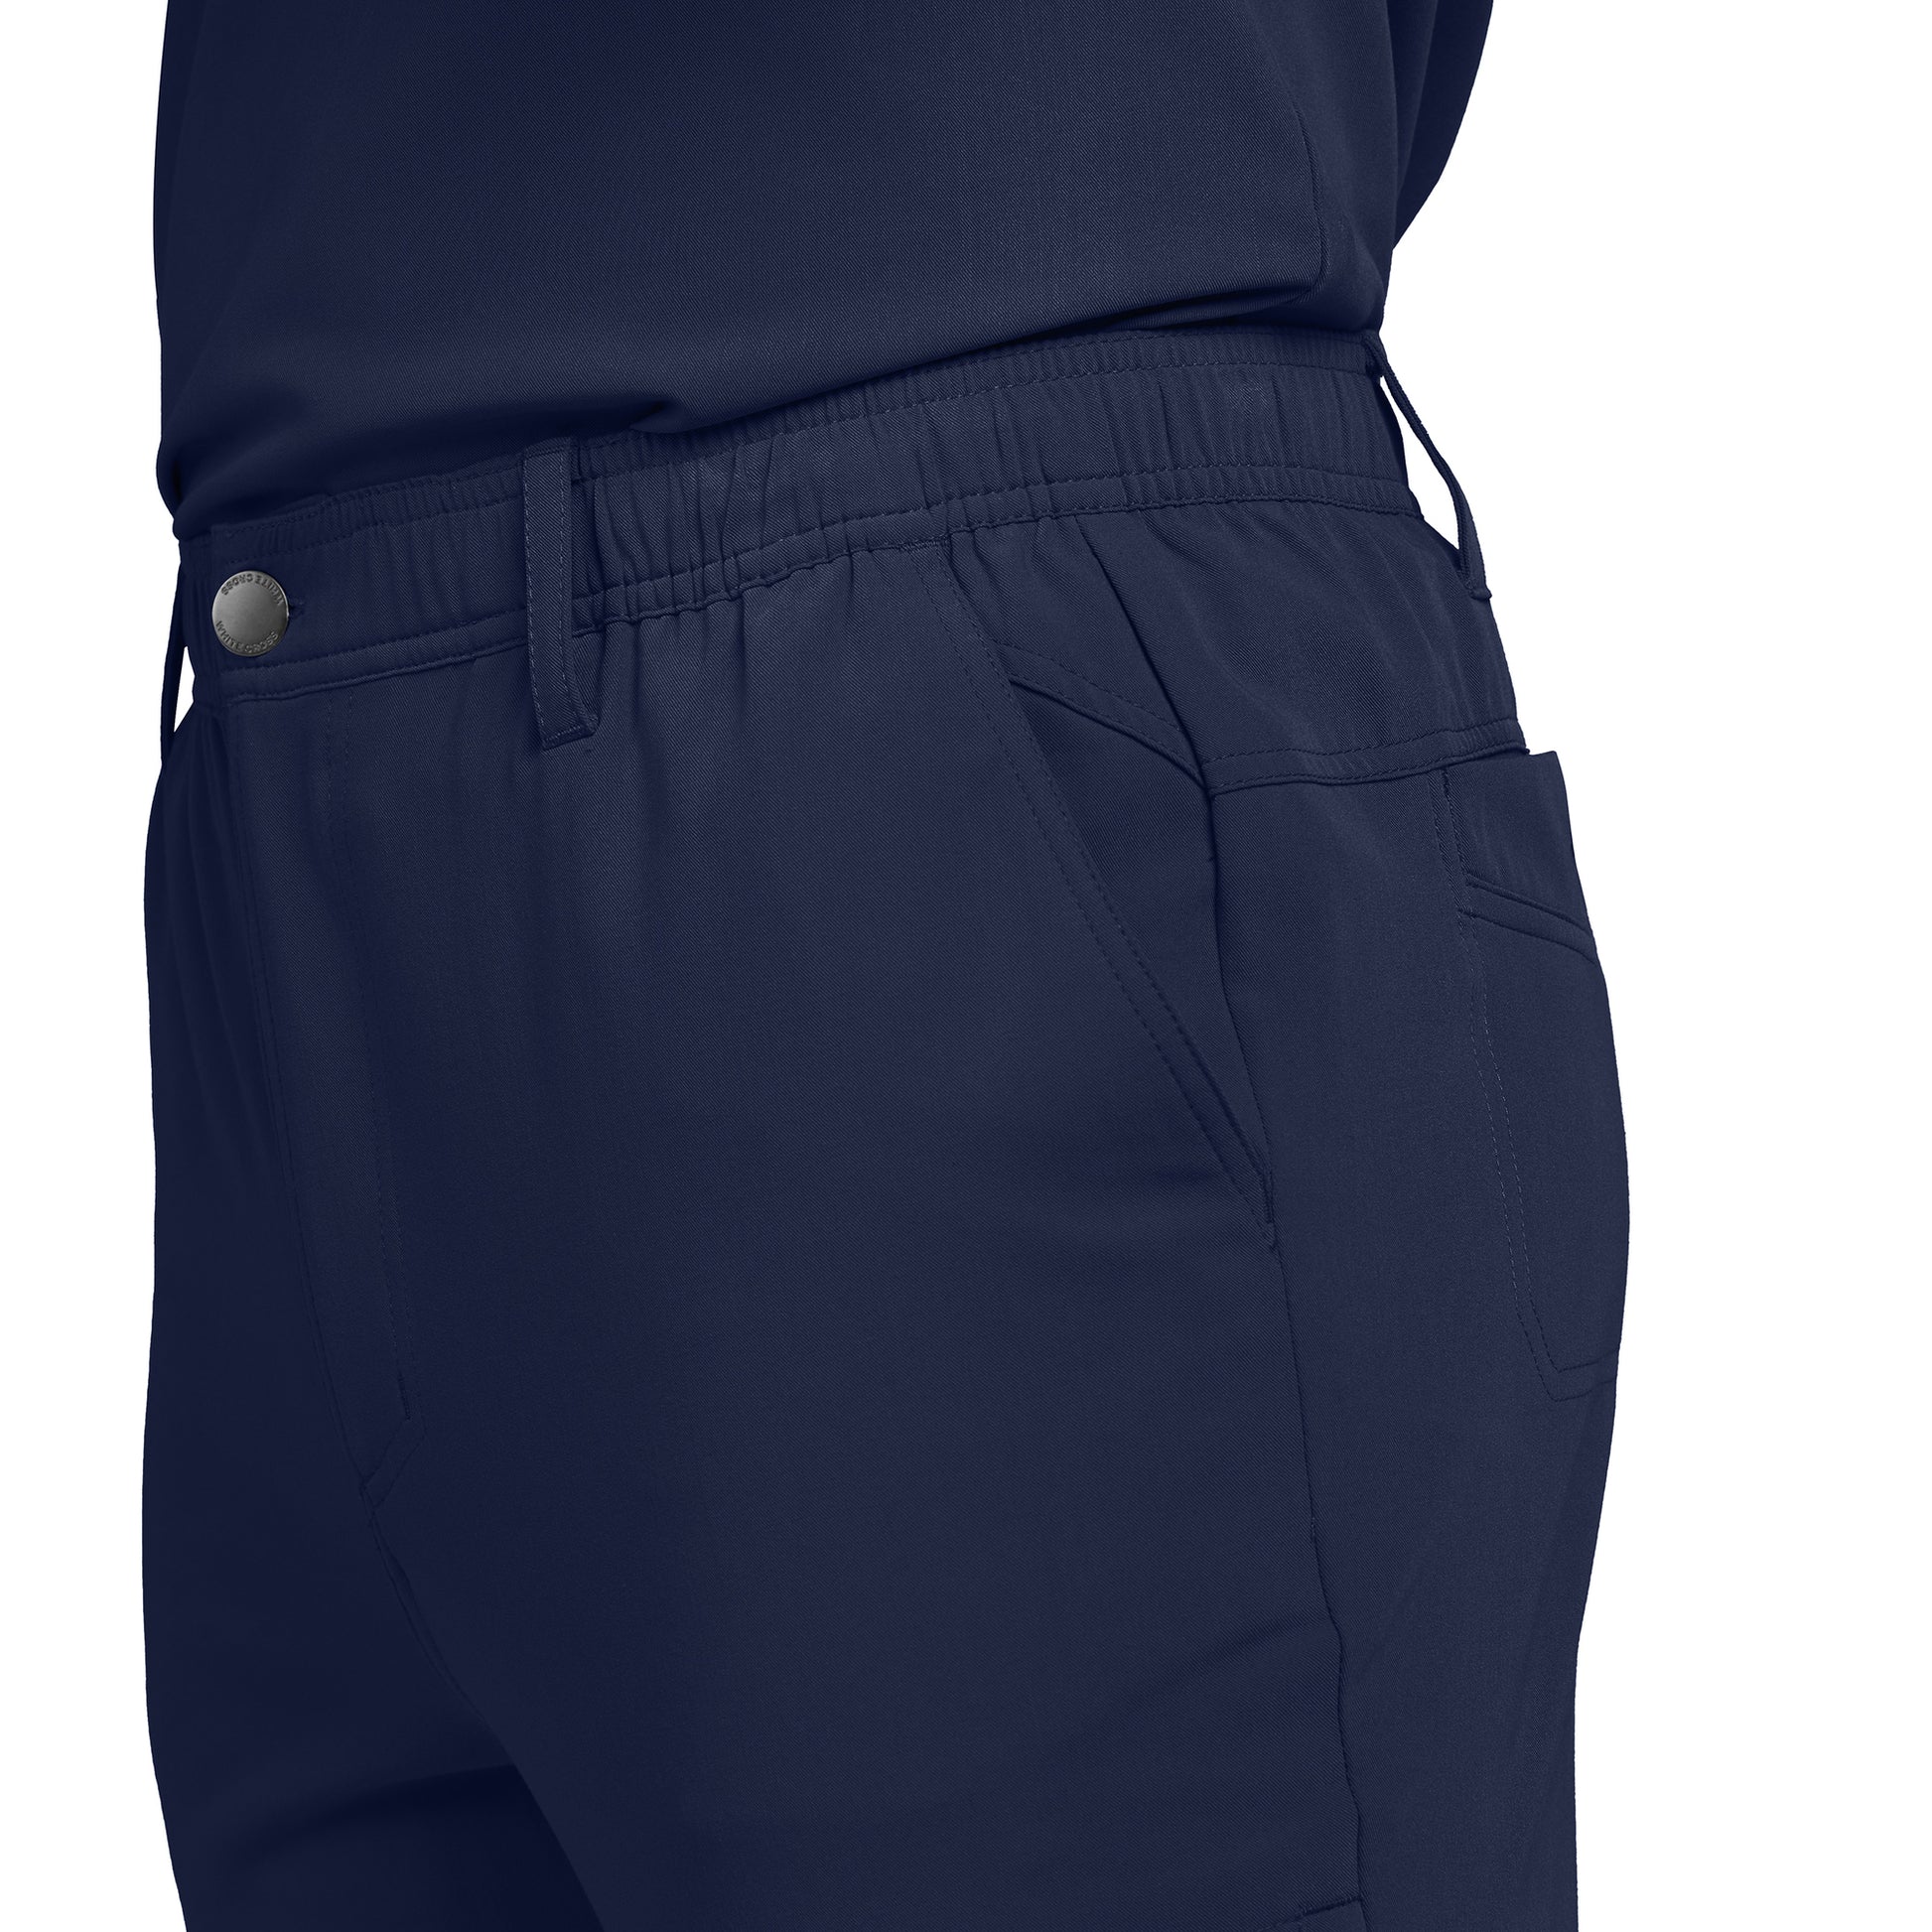 Vue latérale du pantalon cargo 7 poches à jambe droite pour homme CRFT White Cross #WB418 couleur marine